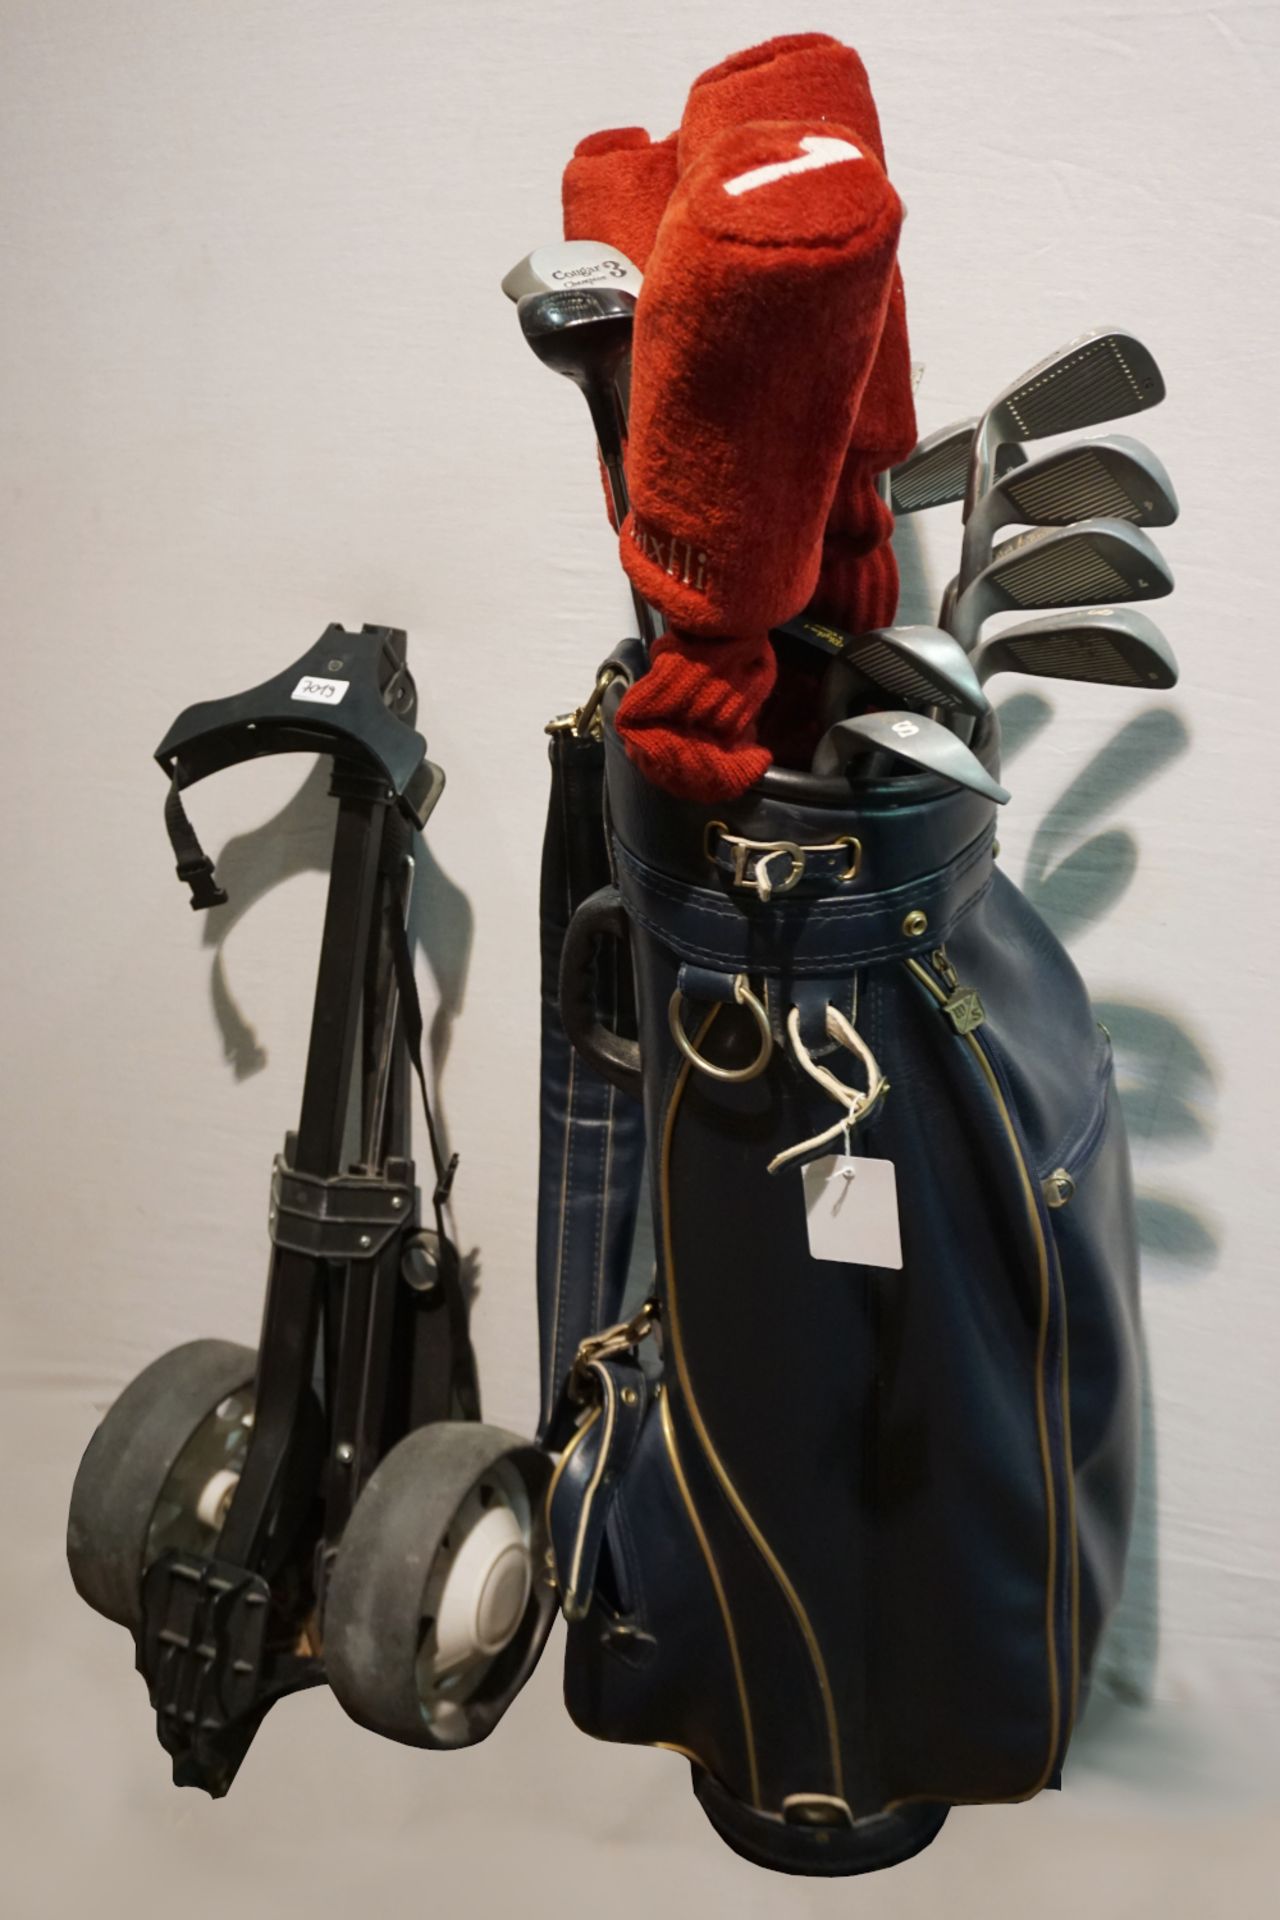 1 Golfbag WILSON mit Schlägern COUGAR "Champion" u.a., mit Tees, Bällen und Trolley z.T. min. besch.